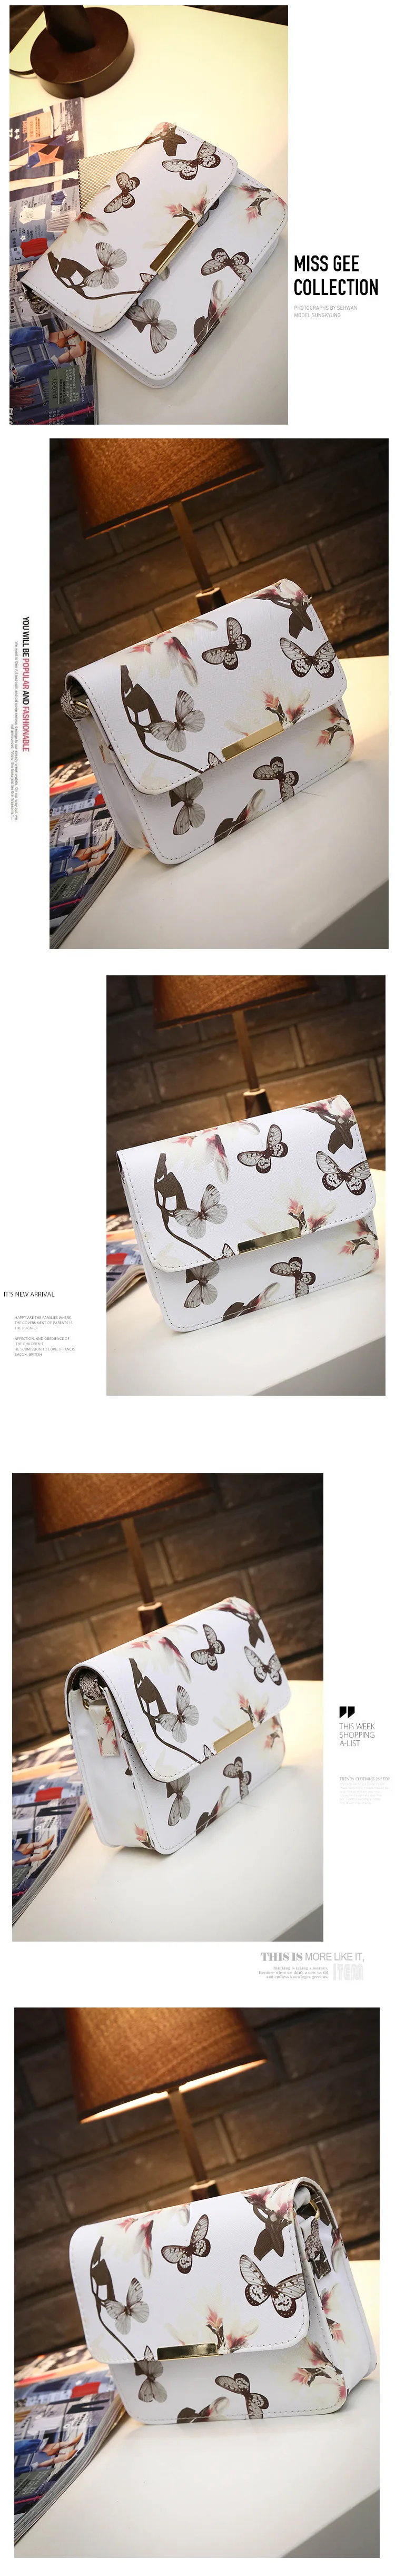 Женская кожаная сумка на плечо с цветочным принтом, сумка-портфель, Ретро стиль, сумка-мессенджер, известный дизайнер, клатч, сумки через плечо, черная, белая